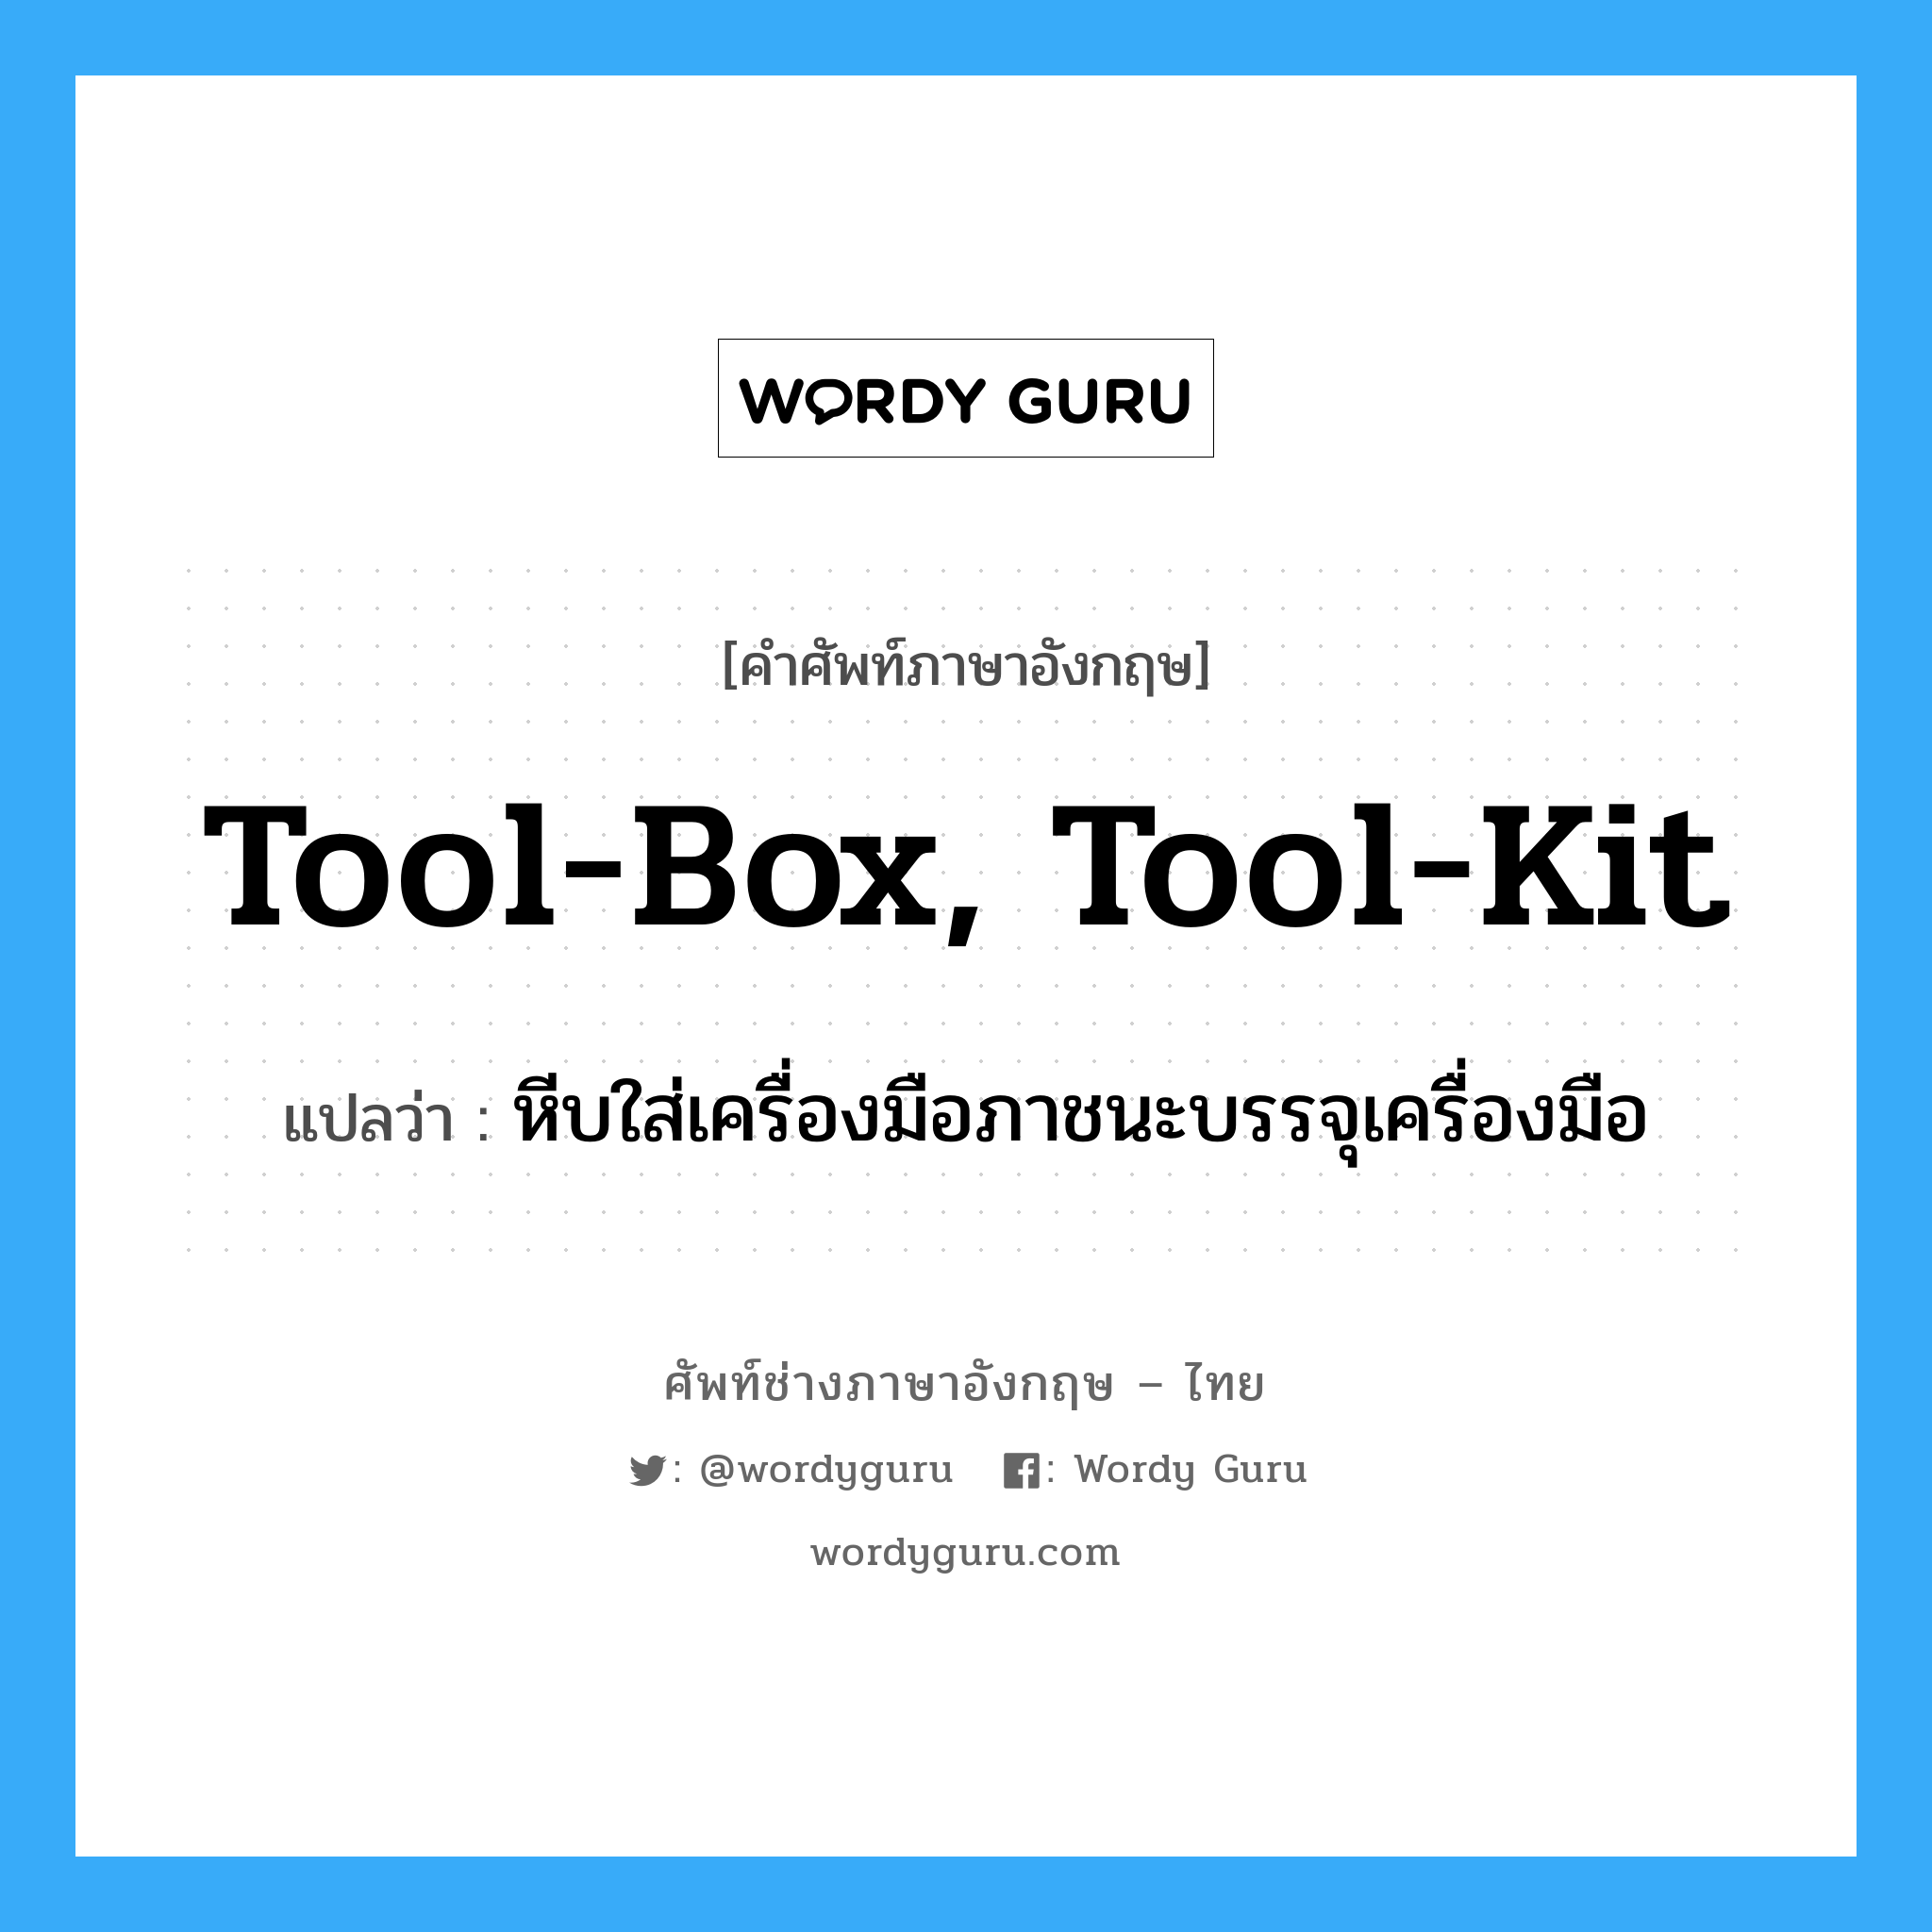 tool-box, tool-kit แปลว่า?, คำศัพท์ช่างภาษาอังกฤษ - ไทย tool-box, tool-kit คำศัพท์ภาษาอังกฤษ tool-box, tool-kit แปลว่า หีบใส่เครื่องมือภาชนะบรรจุเครื่องมือ